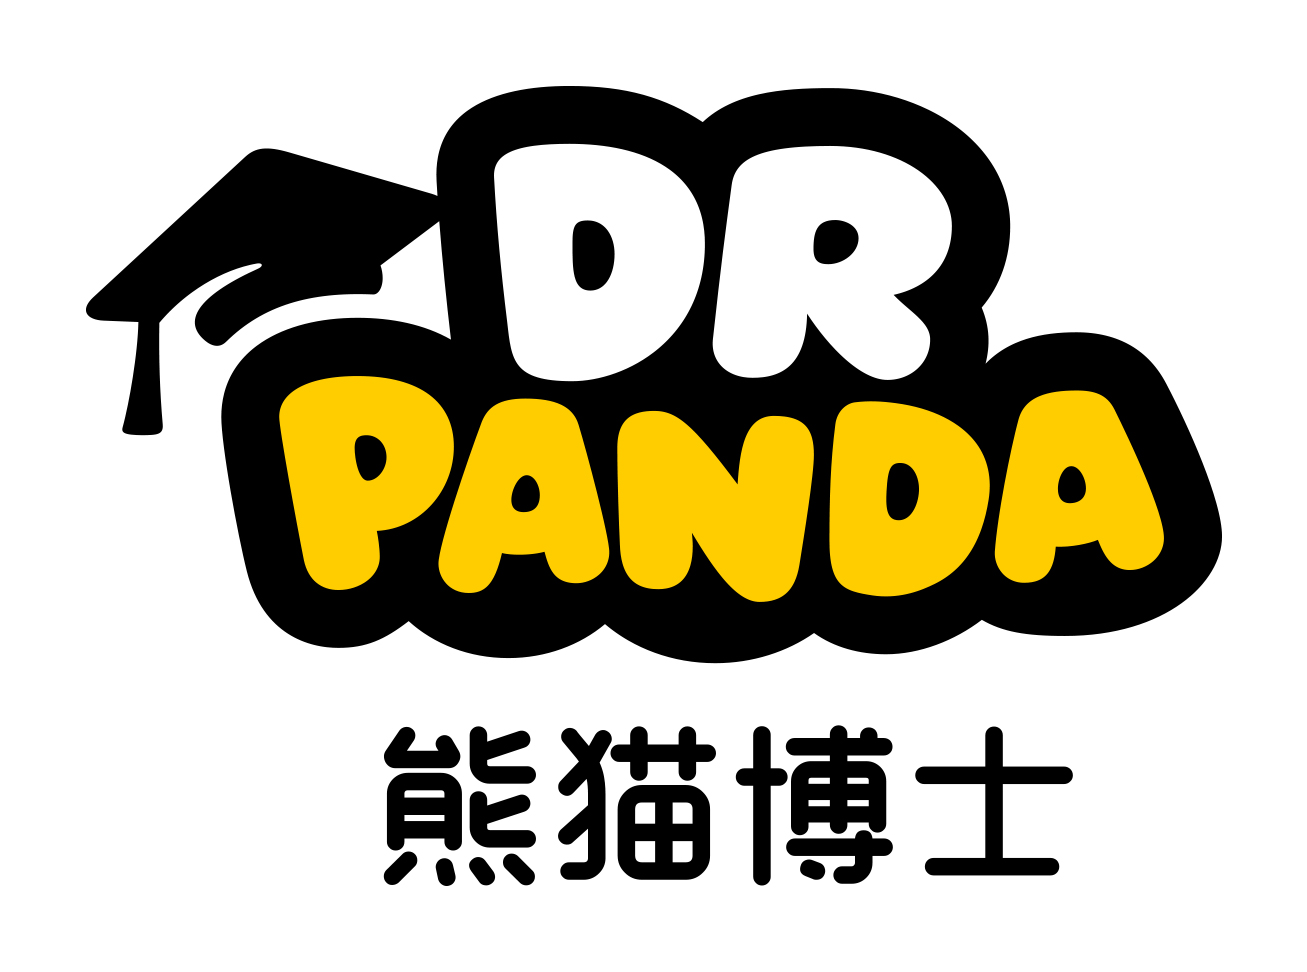 熊貓博士